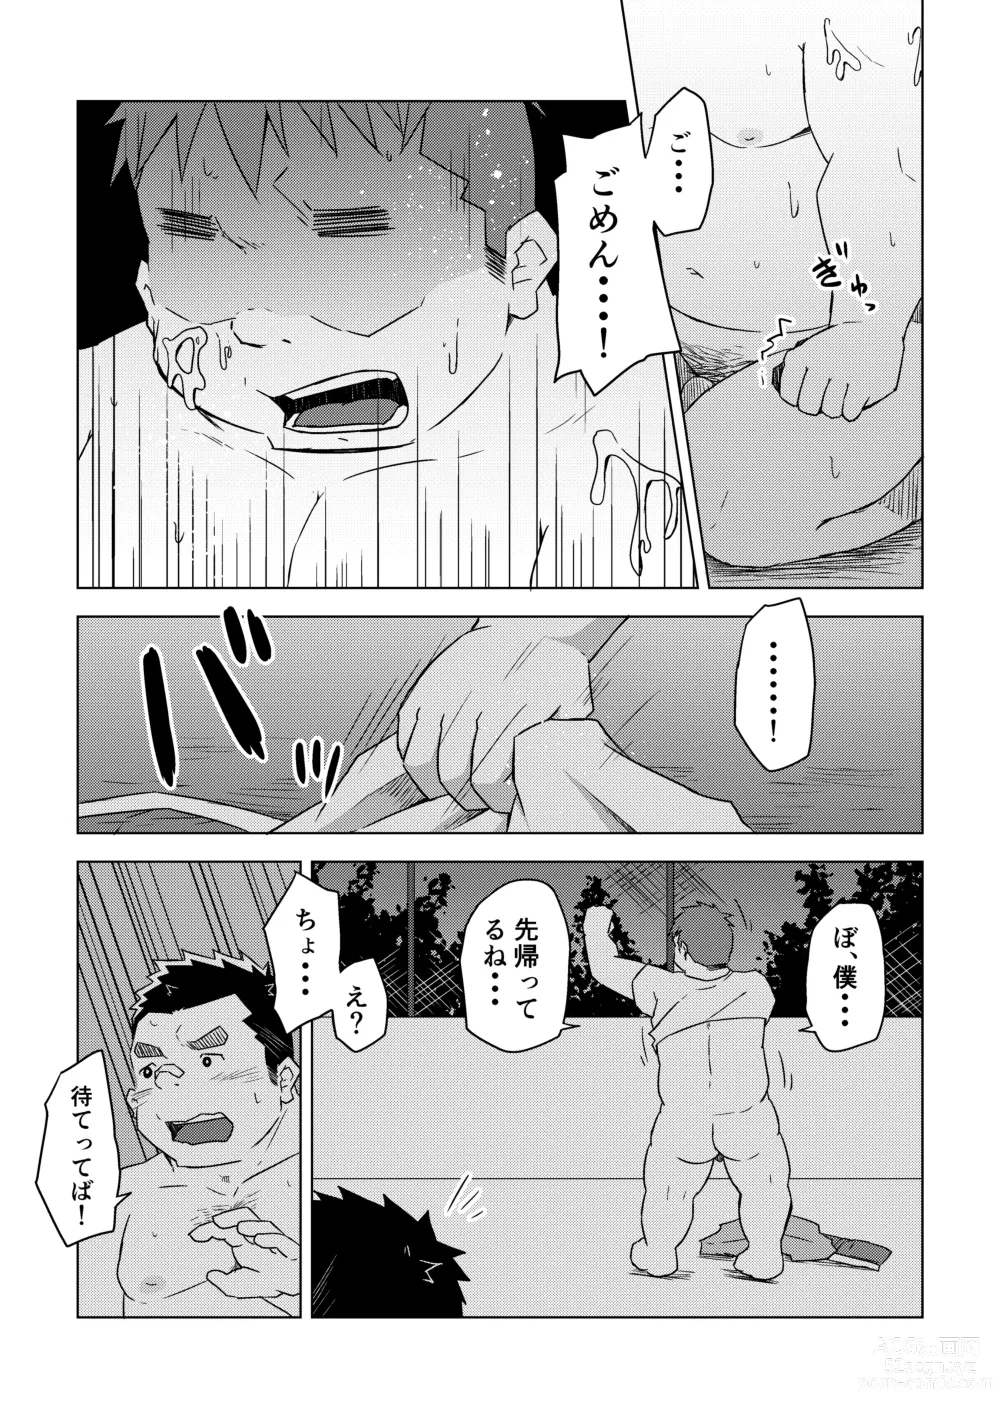 Page 35 of doujinshi Manten no Hoshi 1